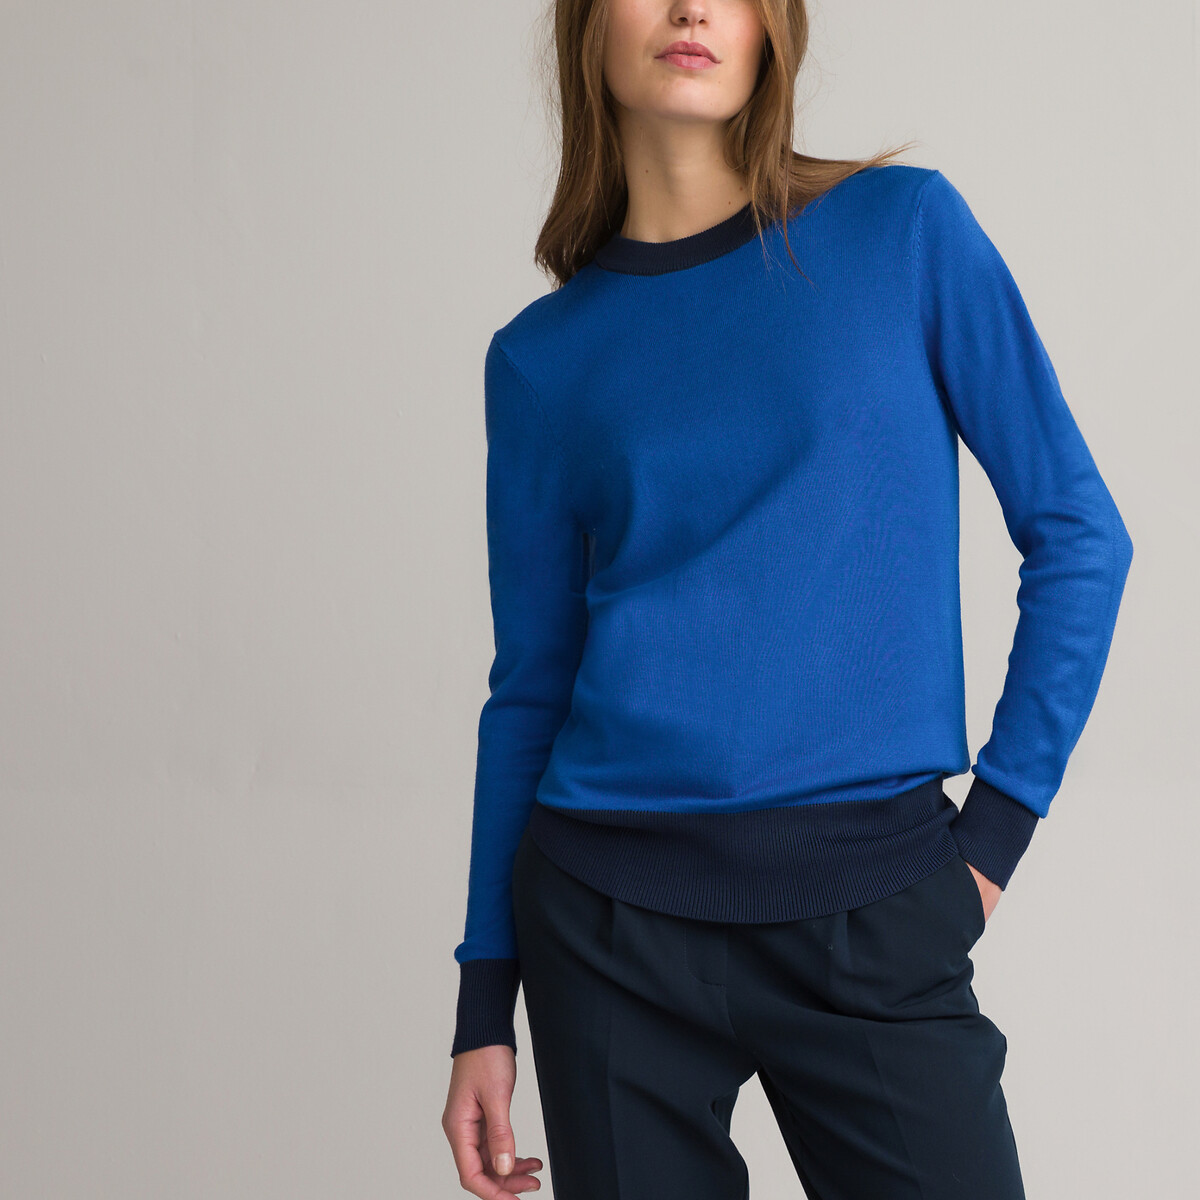 Пуловер Двухцветный с круглым вырезом из тонкого трикотажа XL синий